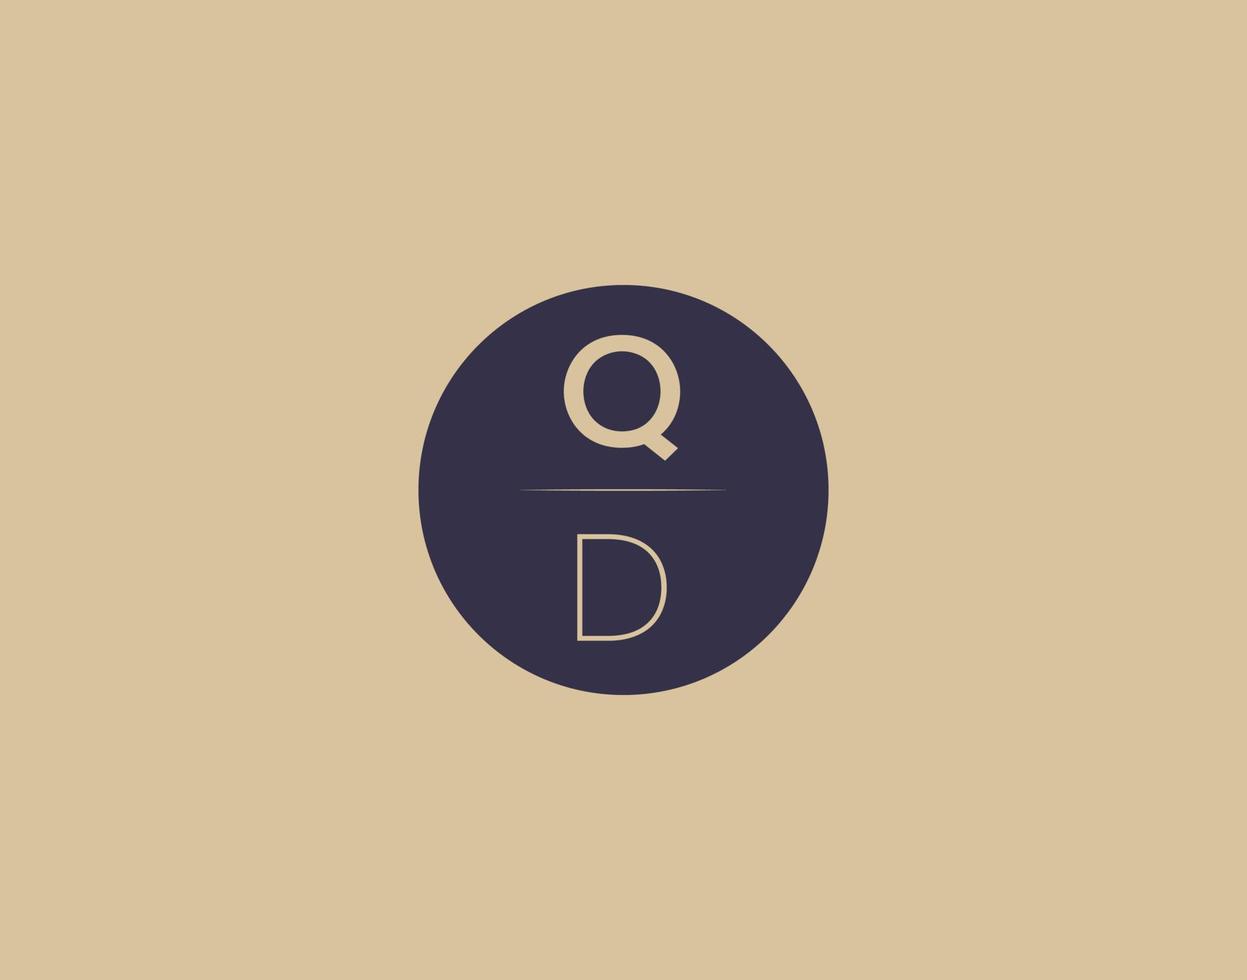 qd lettre moderne élégant logo design images vectorielles vecteur